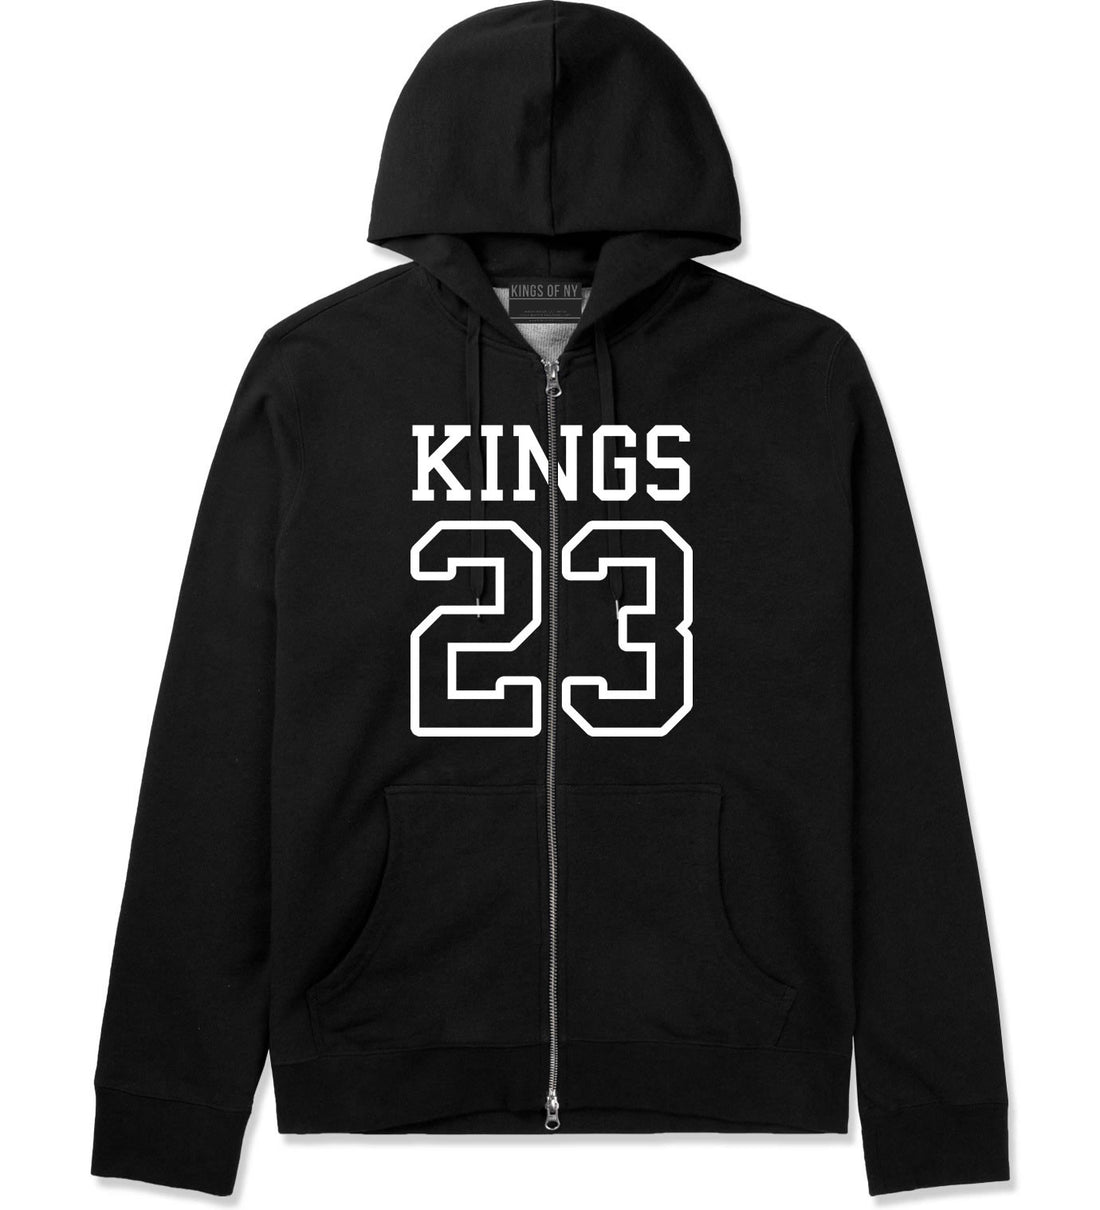 KINGS 23 Jersey Zip Up Hoodie in Black By Kings Of NY